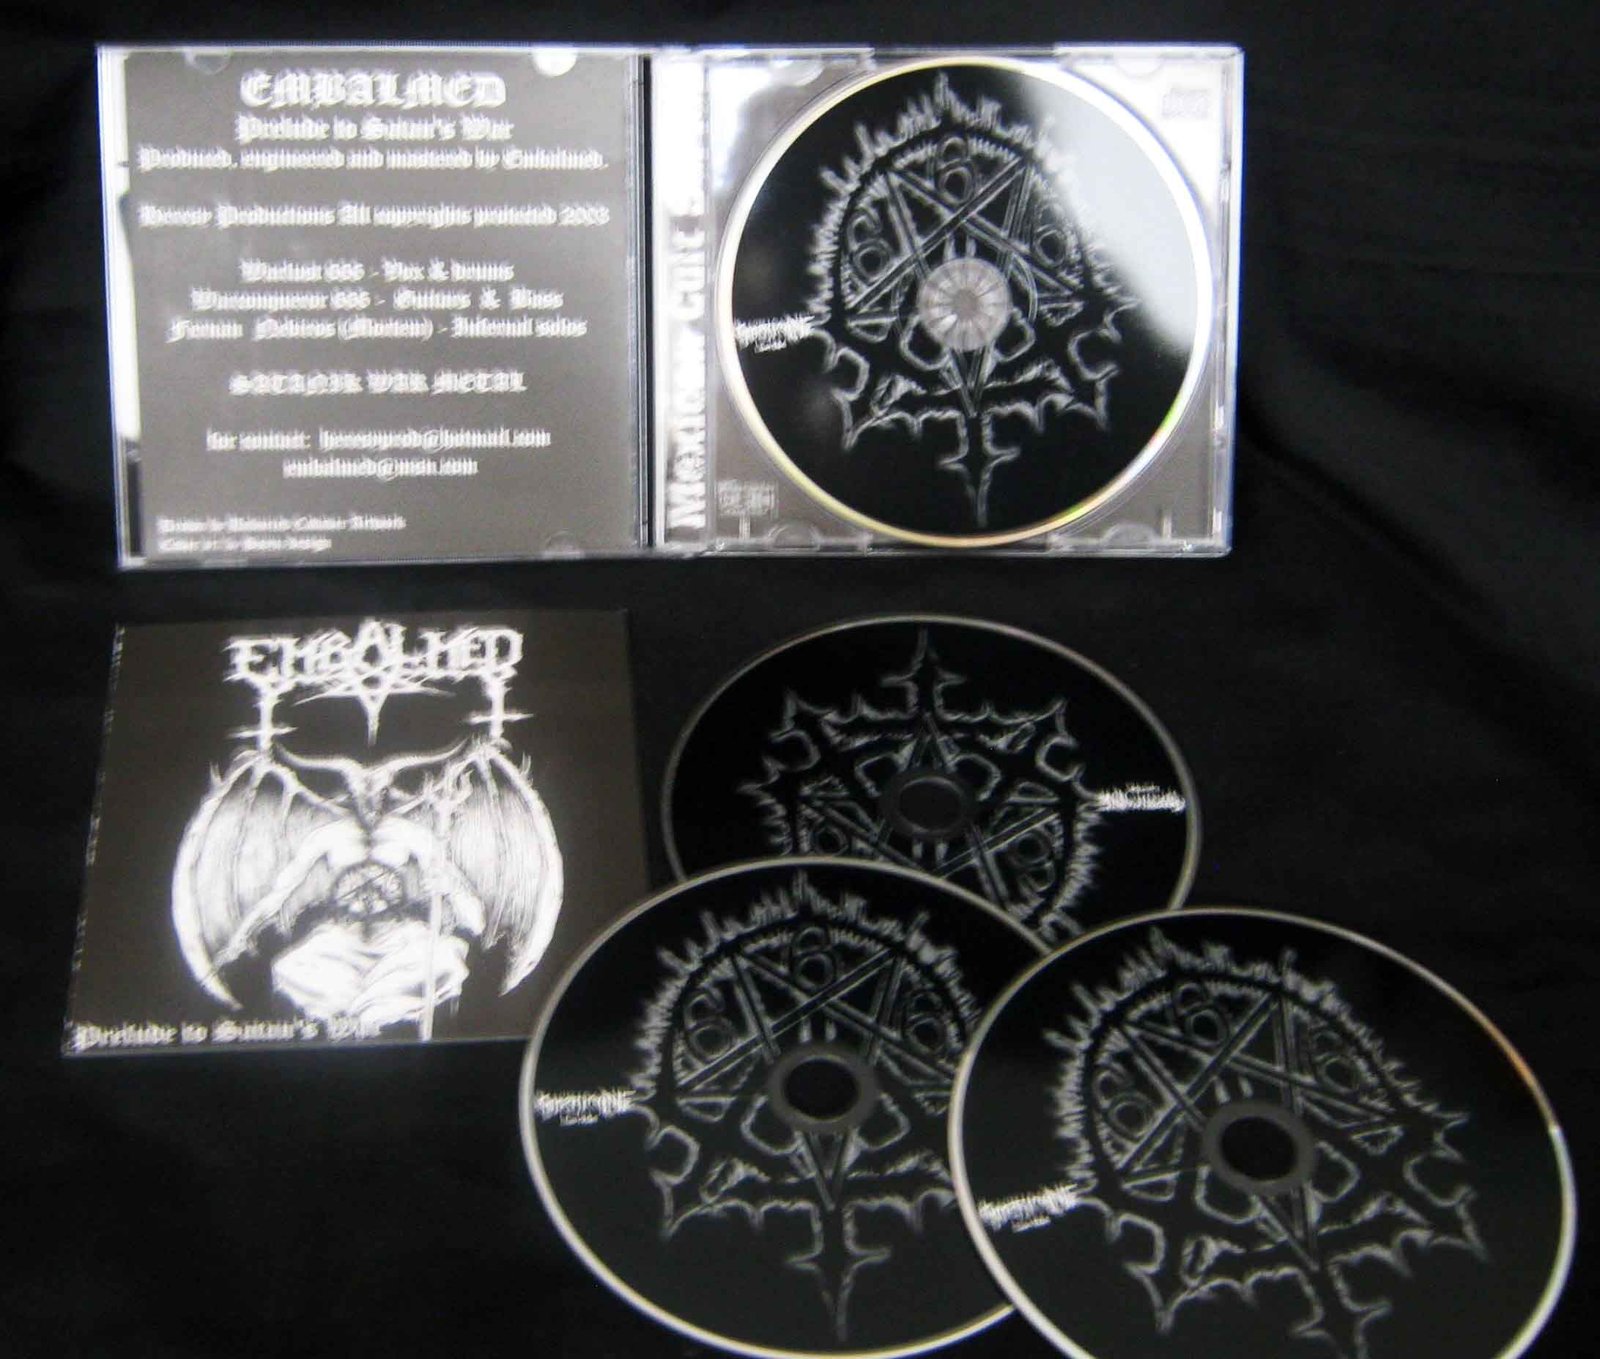 販促大王ヤフオク! - 新品CD EMBALMED/Prelude to Satan's War 2003... - 一般